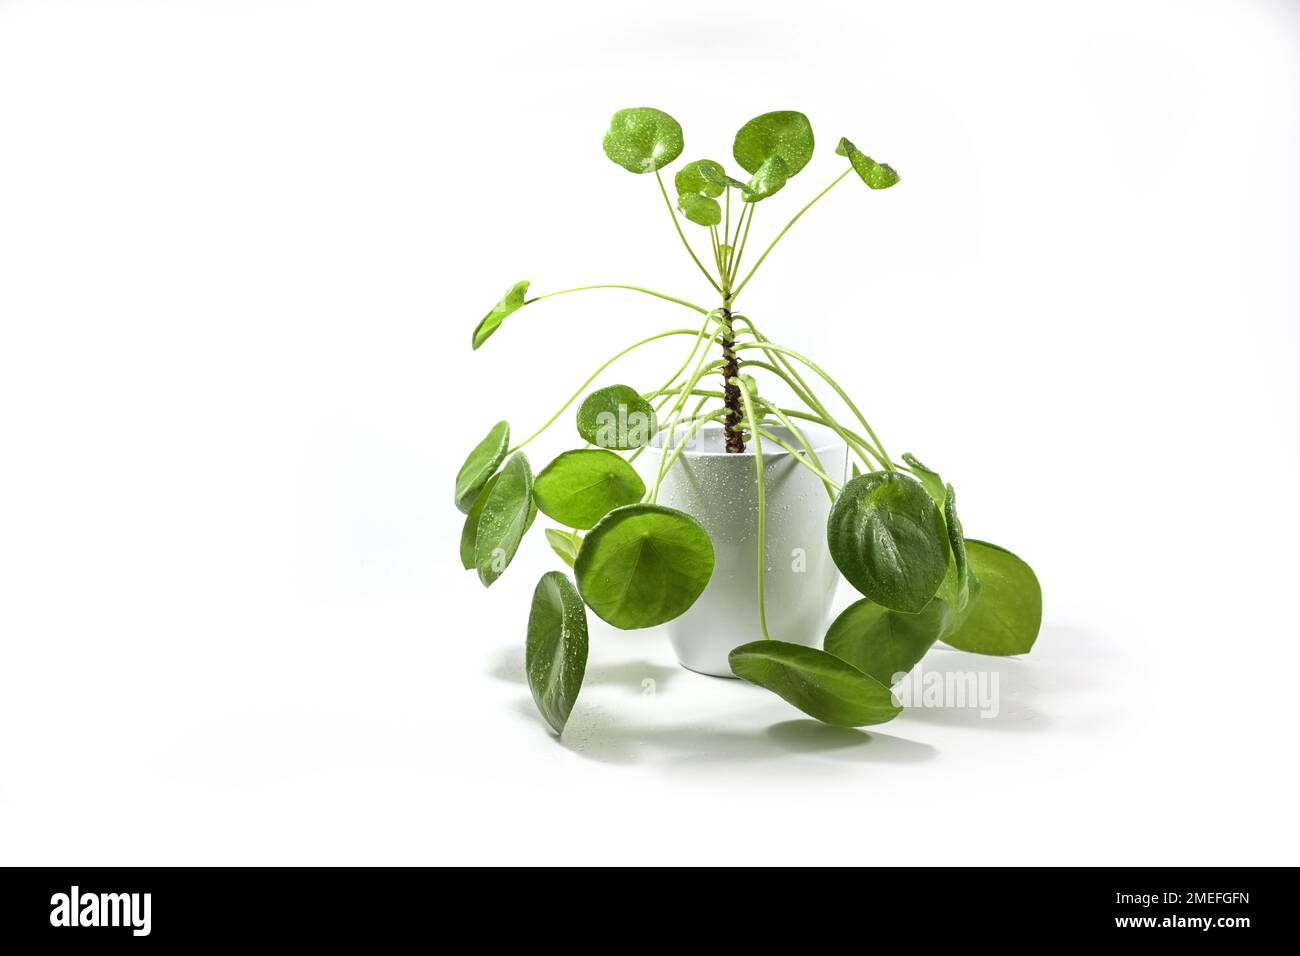 Chinesische Geldpflanze (Pilea peperomioides) mit grünen runden Blättern und einem langen Stiel, in einer Porzellanpflanzung gegossen, frisch mit Wasser besprüht, isoliert Stockfoto